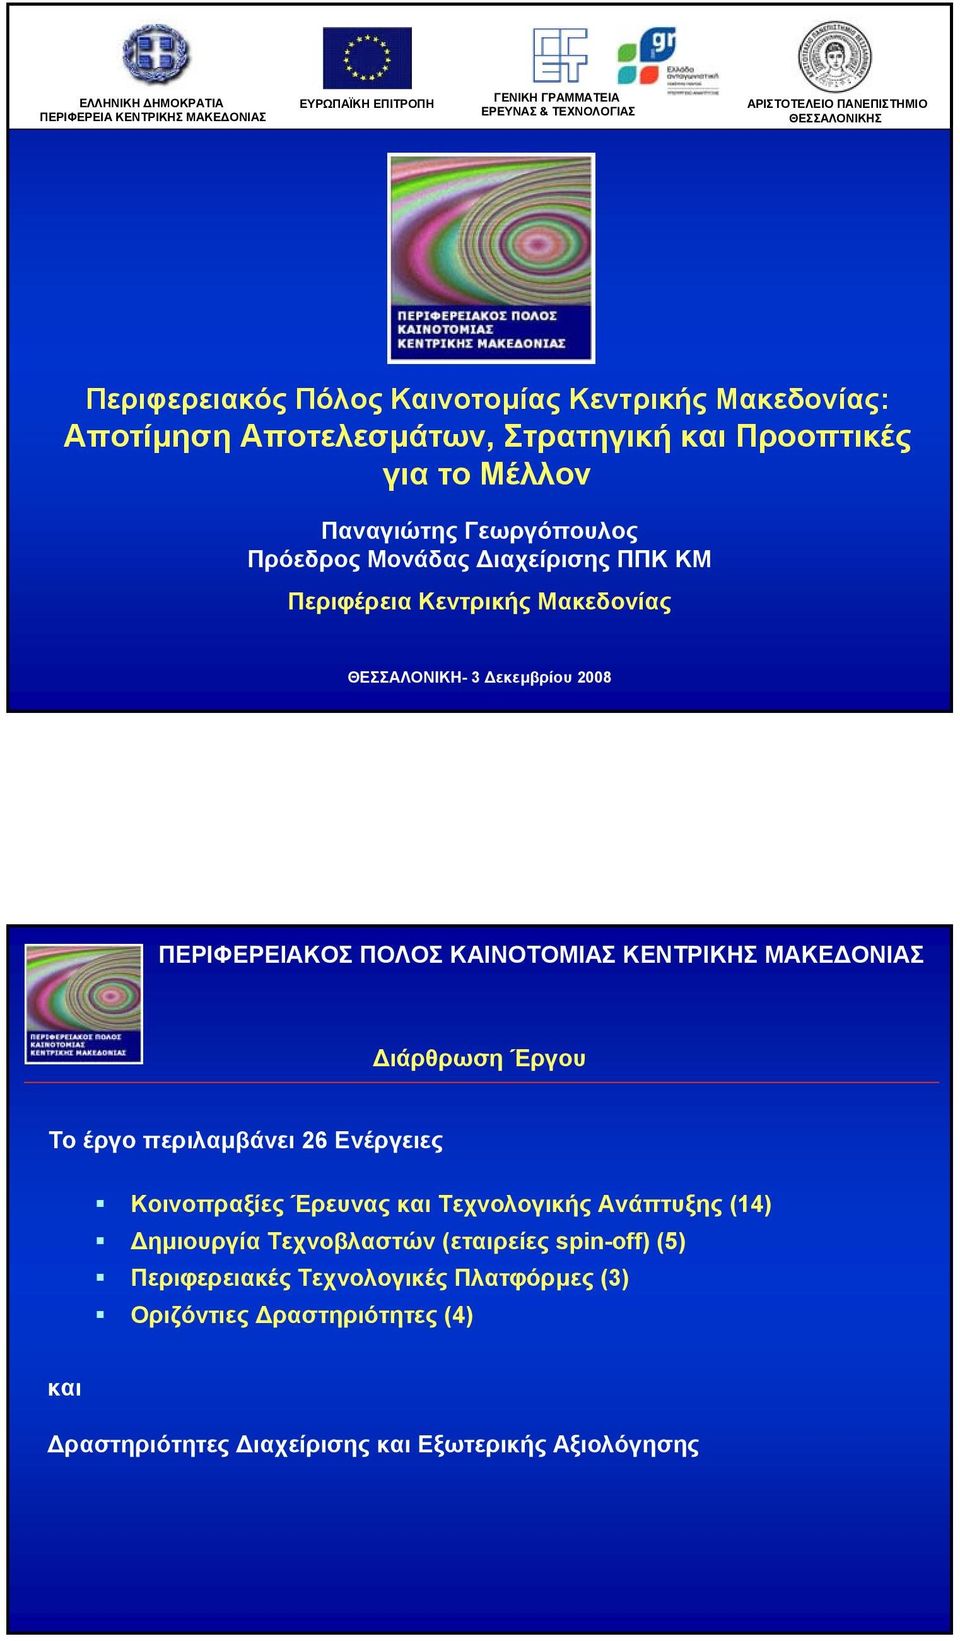 Περιφέρεια Κεντρικής Μακεδονίας ΘΕΣΣΑΛΟΝΙΚΗ- 3 εκεµβρίου 2008 ιάρθρωση Έργου Το έργο περιλαµβάνει 26 Ενέργειες Κοινοπραξίες Έρευνας και Τεχνολογικής Ανάπτυξης (14)